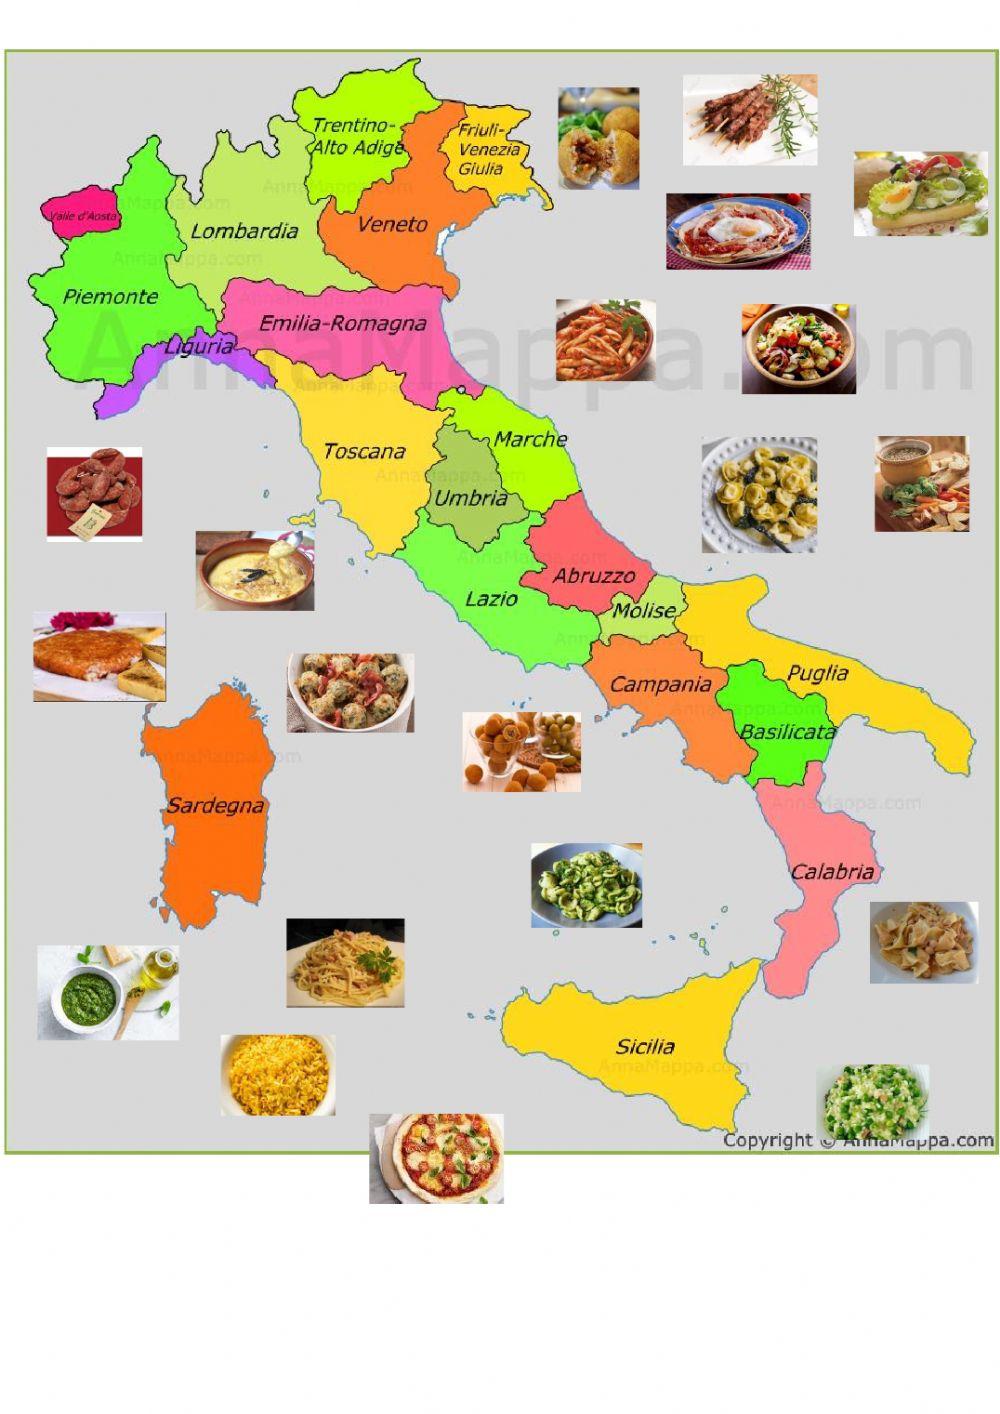 Cibo italiano: migliori piatti di ogni regione!